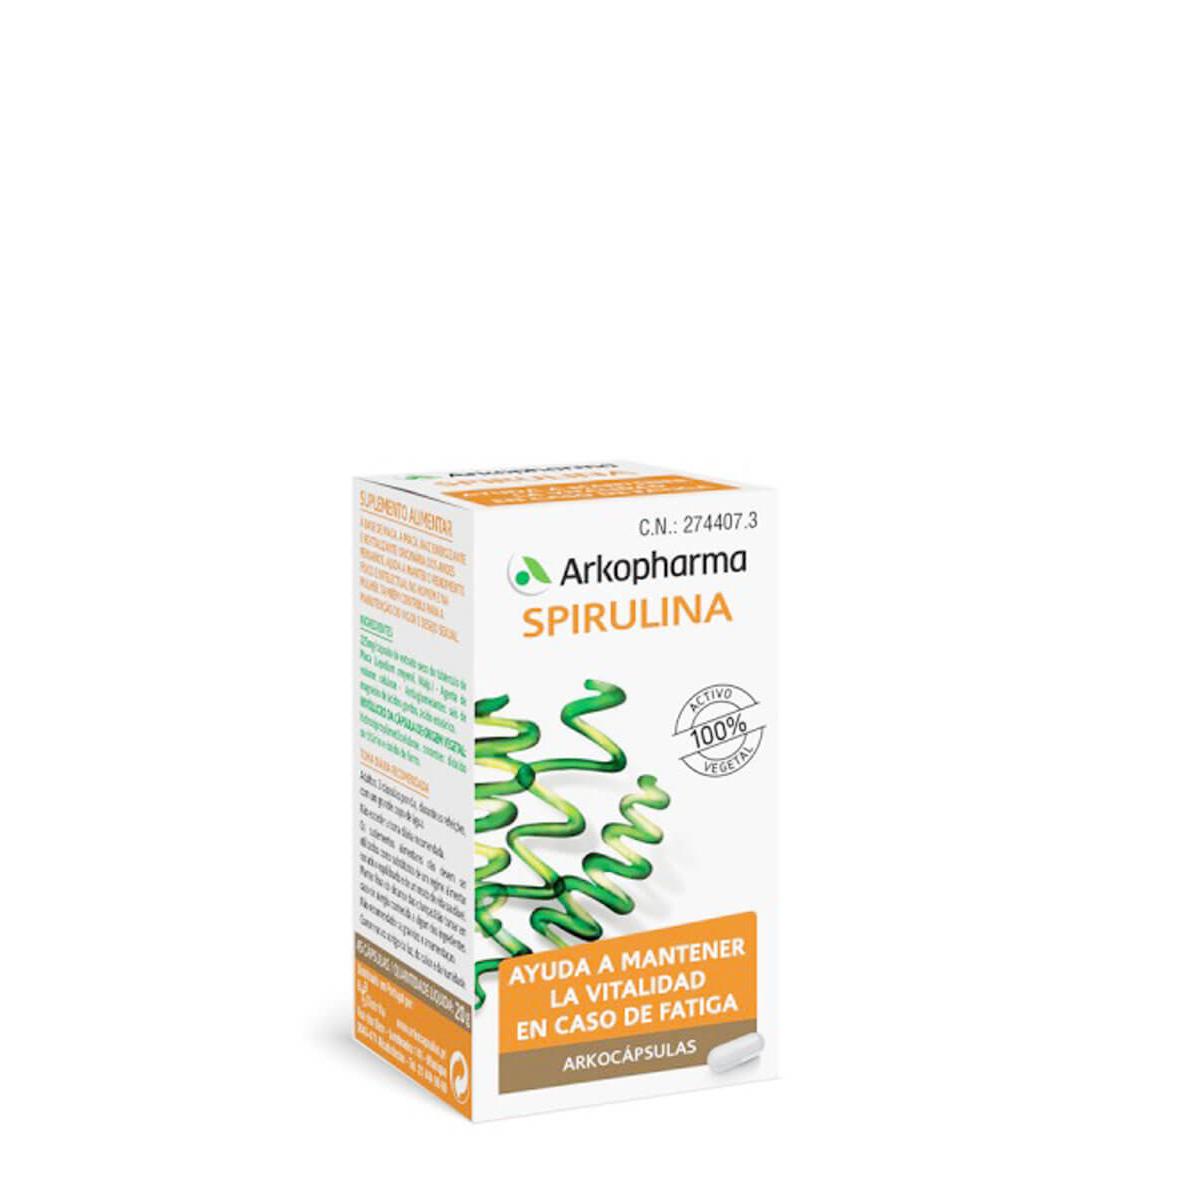 Arkopharma - Arkopharma arkocapsulas  spirulina 50 capsulas